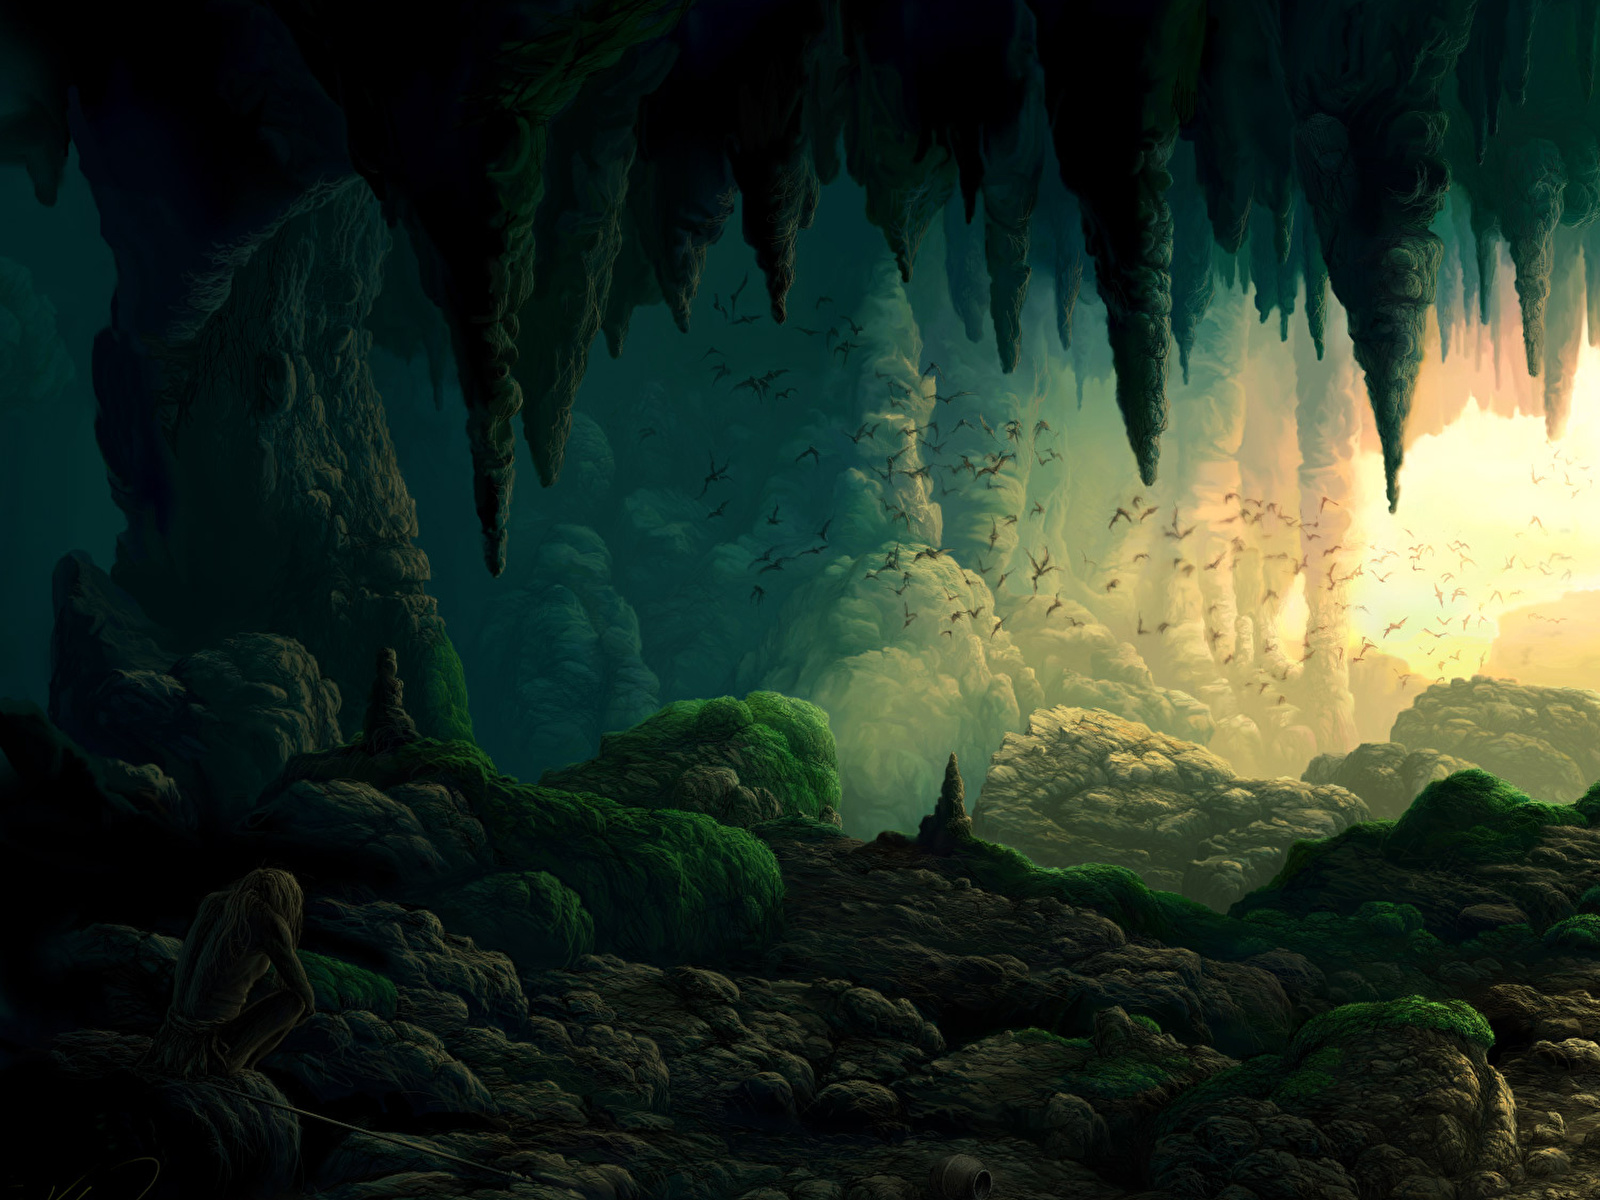 Фантастический мир Пещера Фэнтези фото 1600x1200 Фантастика, пещере, пещеры обои карт...